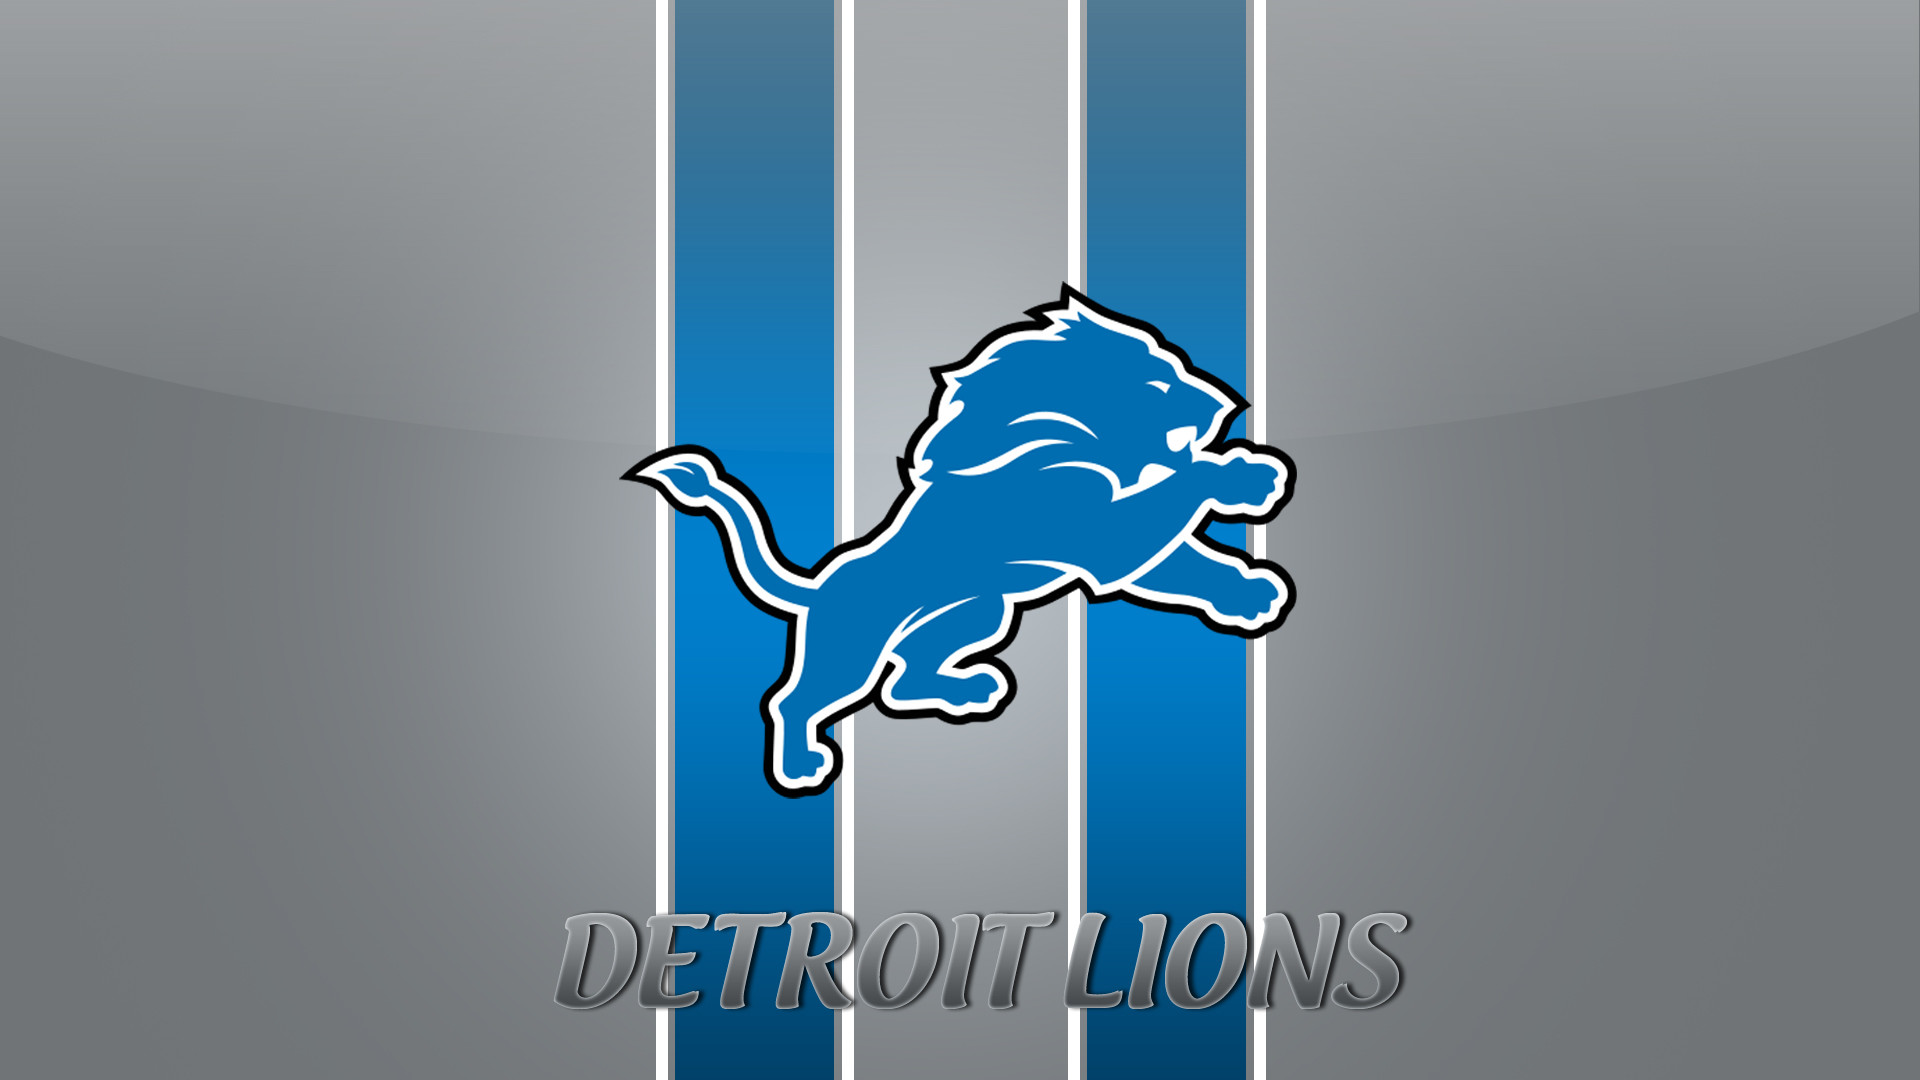 1920x1080 detroit lions pics | Detroit Lions Wallpaper 10 300x168 Detroit Lions  Wallpaper (10)